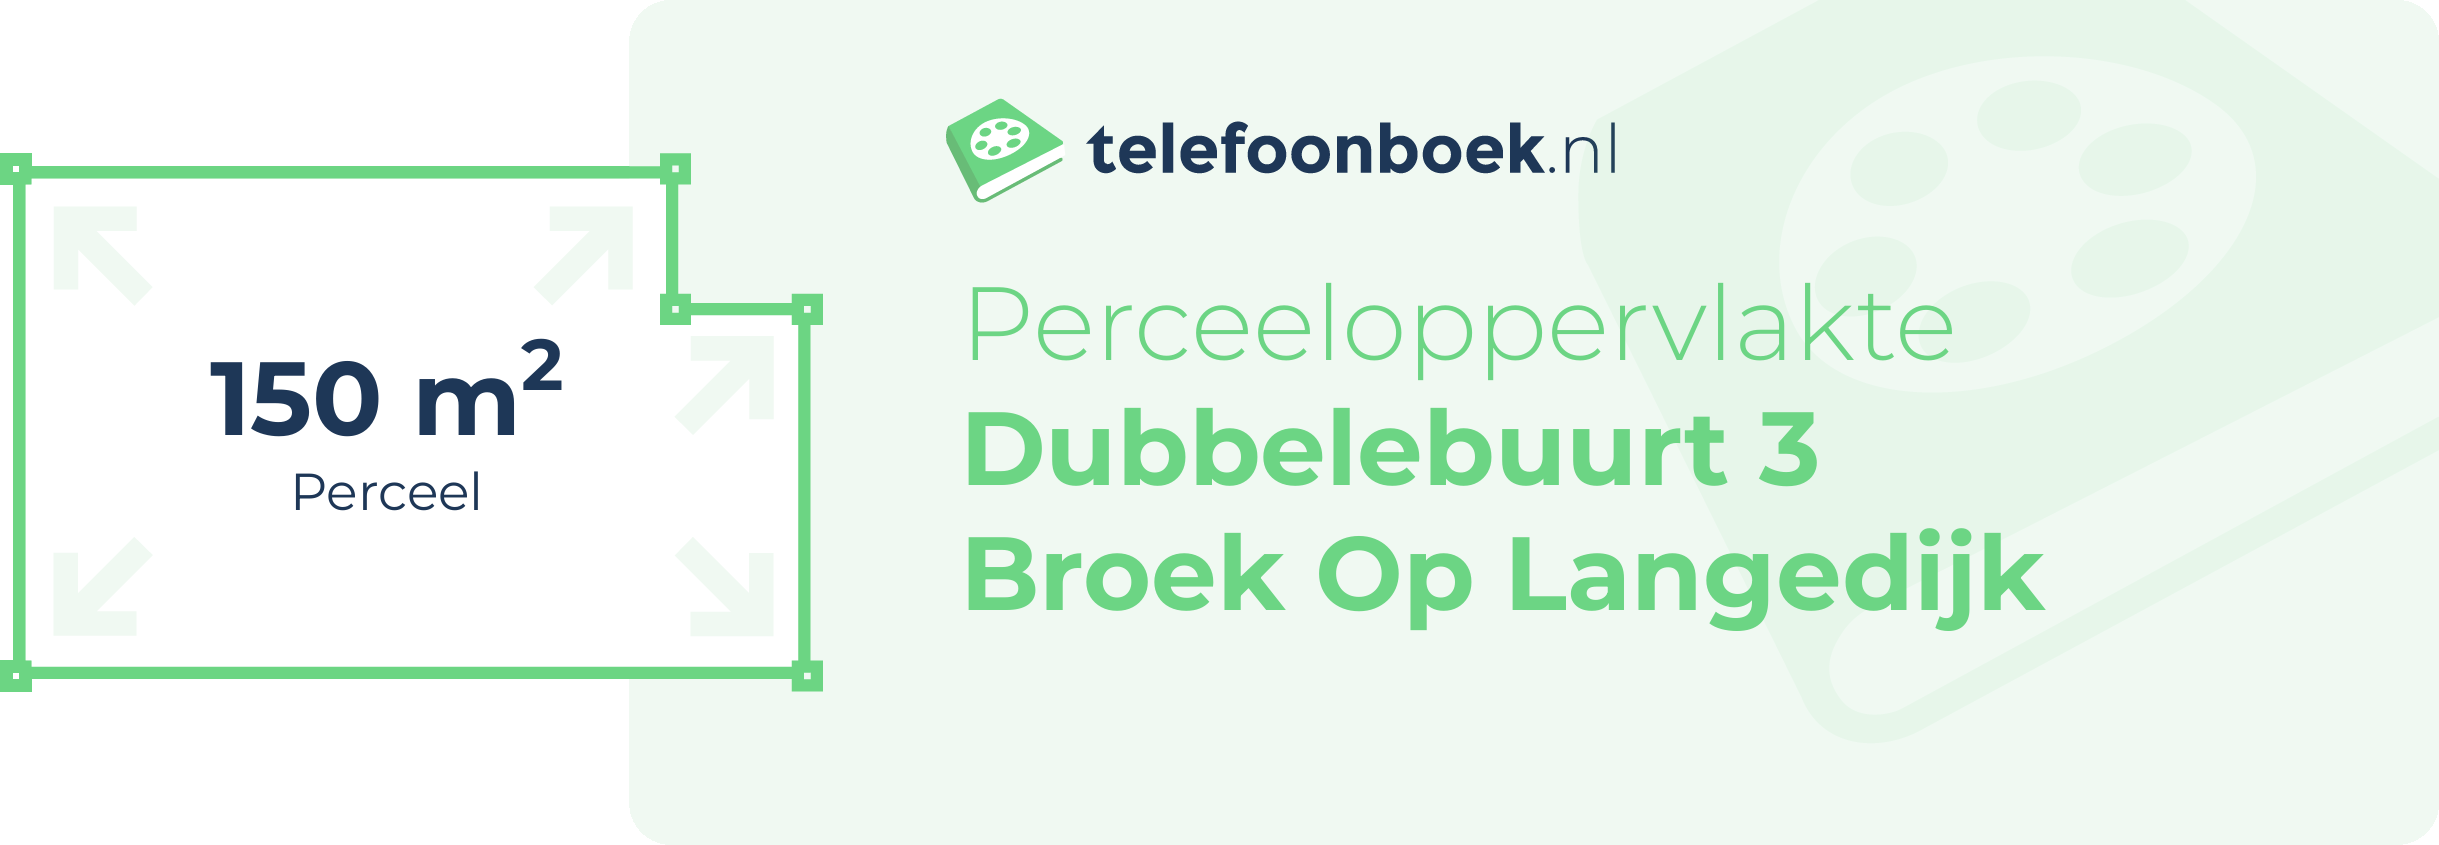 Perceeloppervlakte Dubbelebuurt 3 Broek Op Langedijk